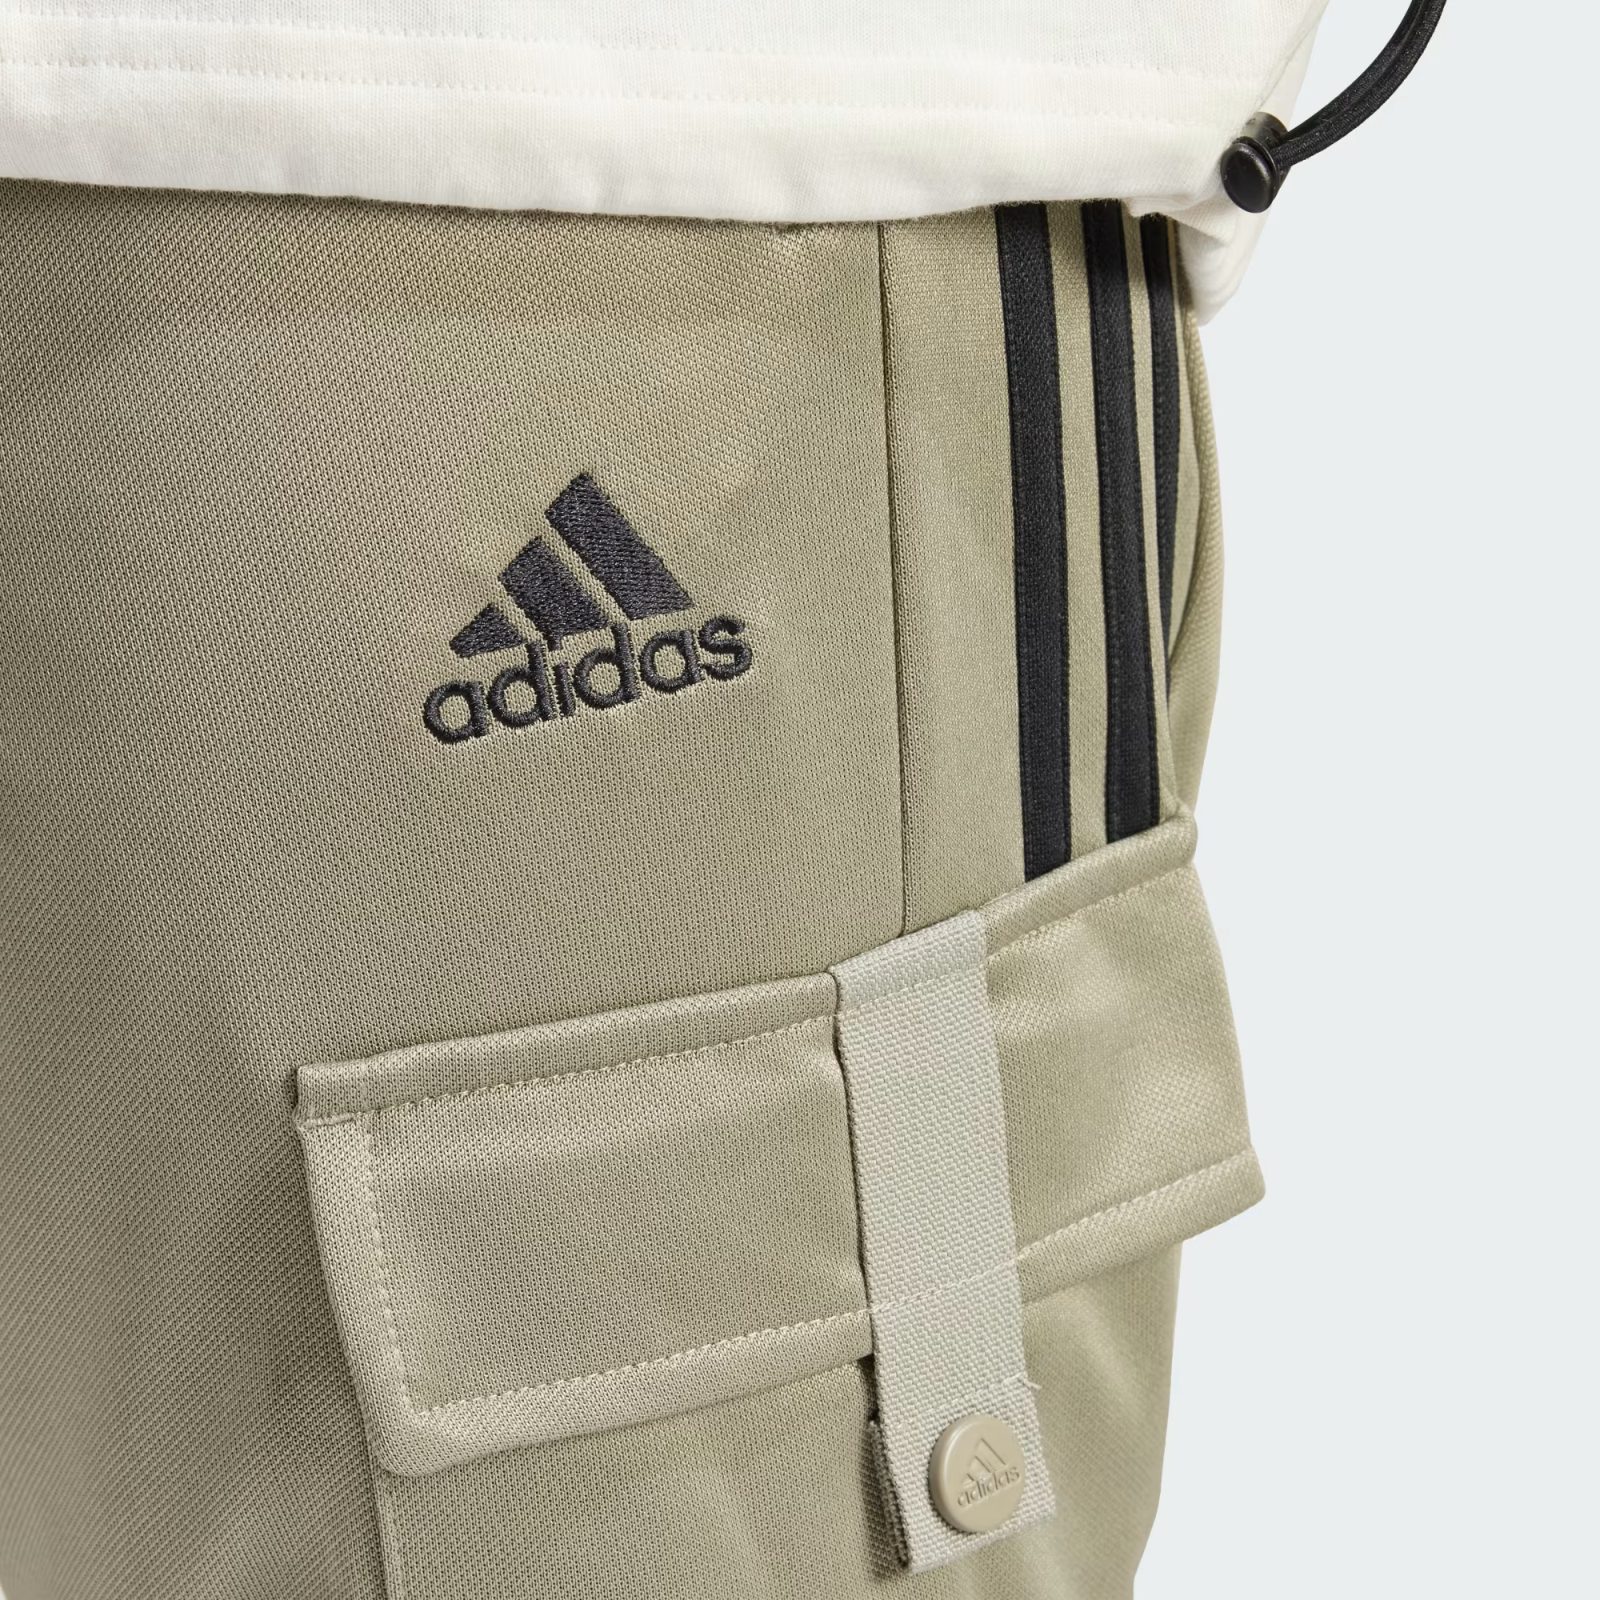 Adidas Uomo Tiro Cargo Comfort Pantaloni and 50 similar items